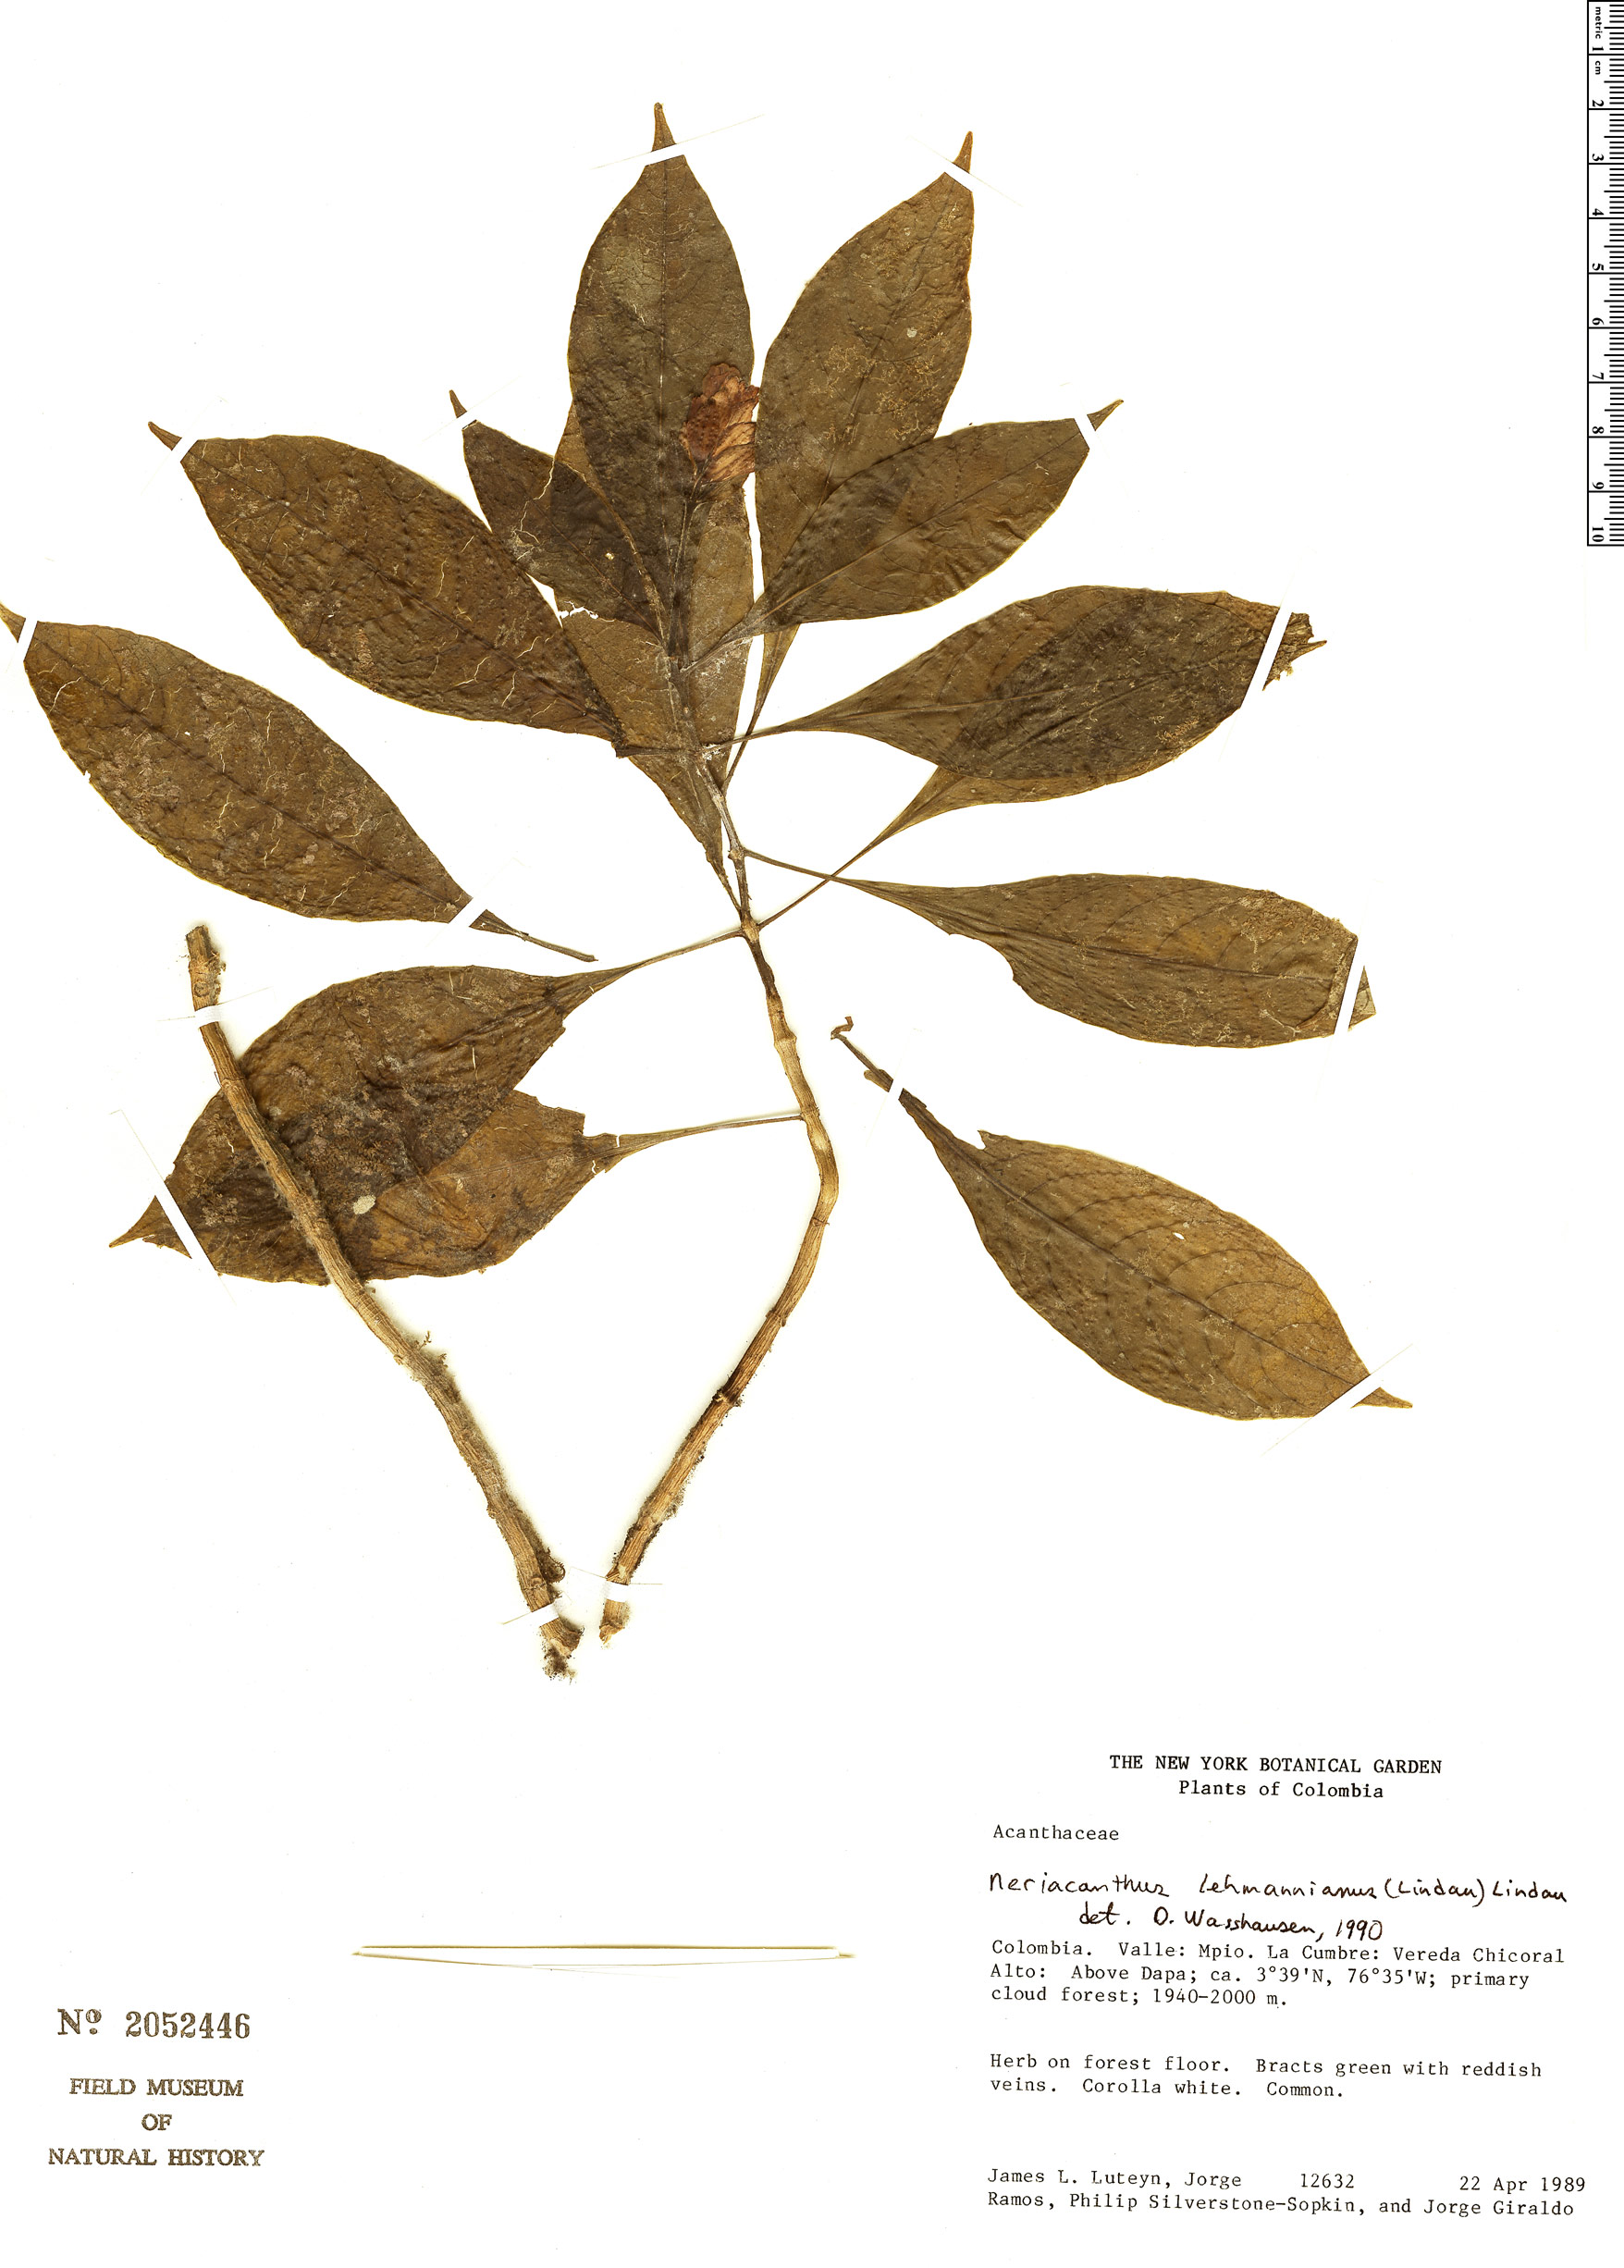 Neriacanthus lehmannianus image